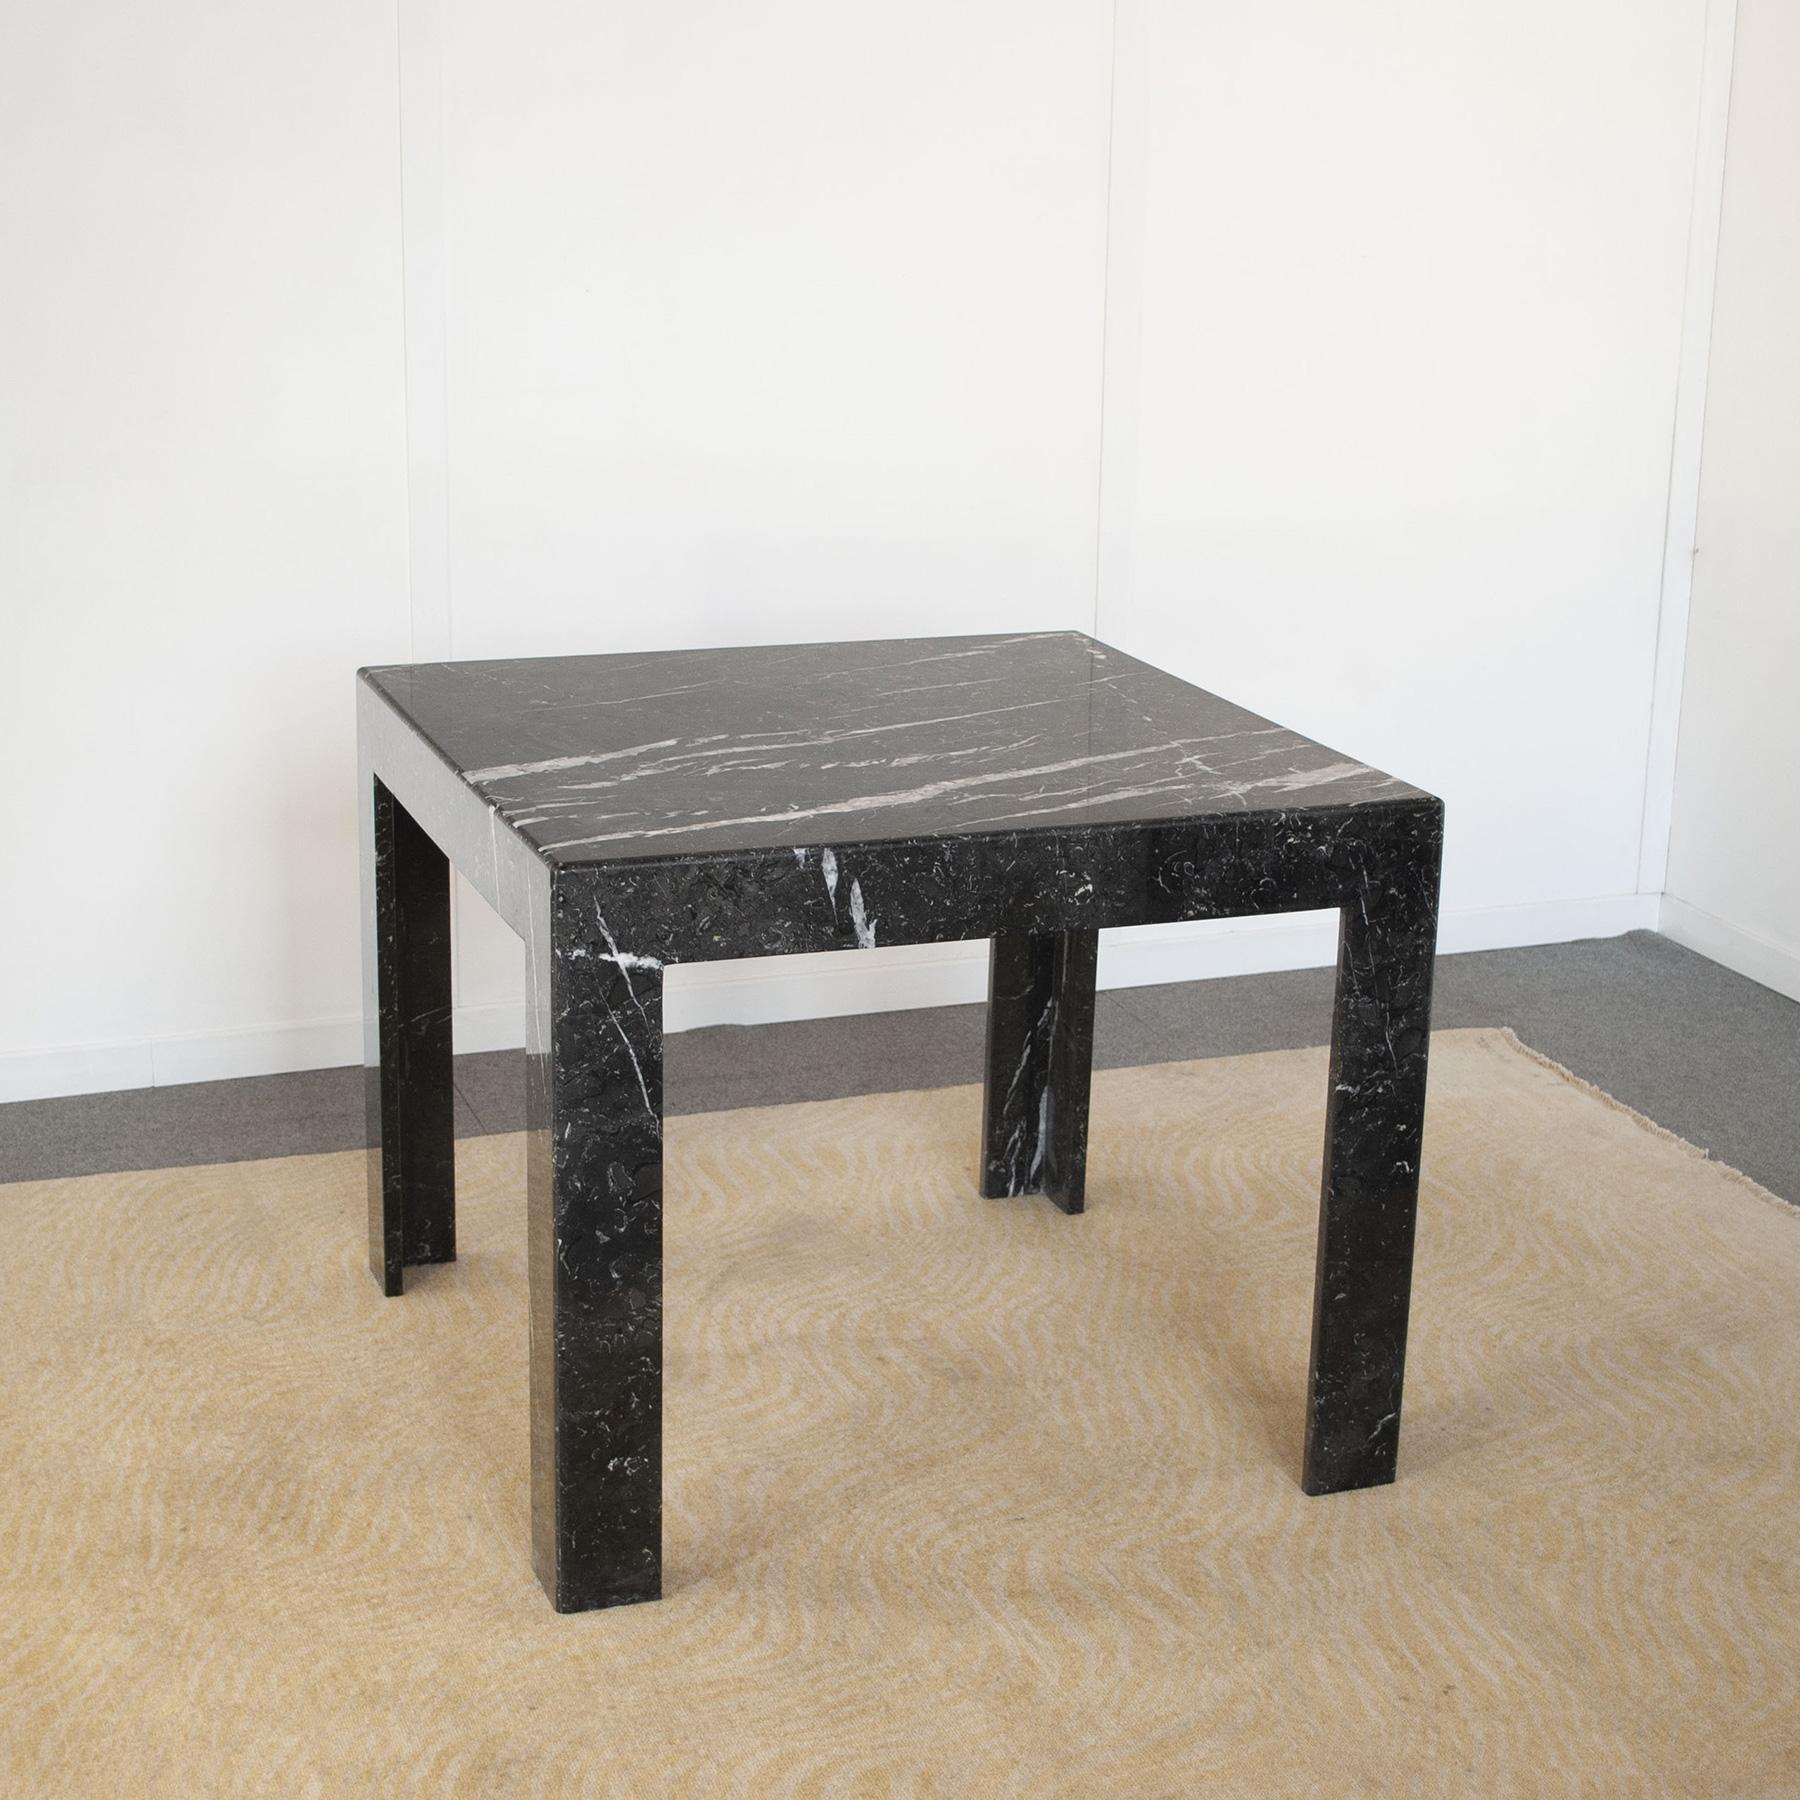 Tisch aus schwarzem Marquina-Marmor, entworfen von den Architekten Alessandro Giusti & Egidio Di Rosa für Ultima Edizione in den 1980er Jahren.